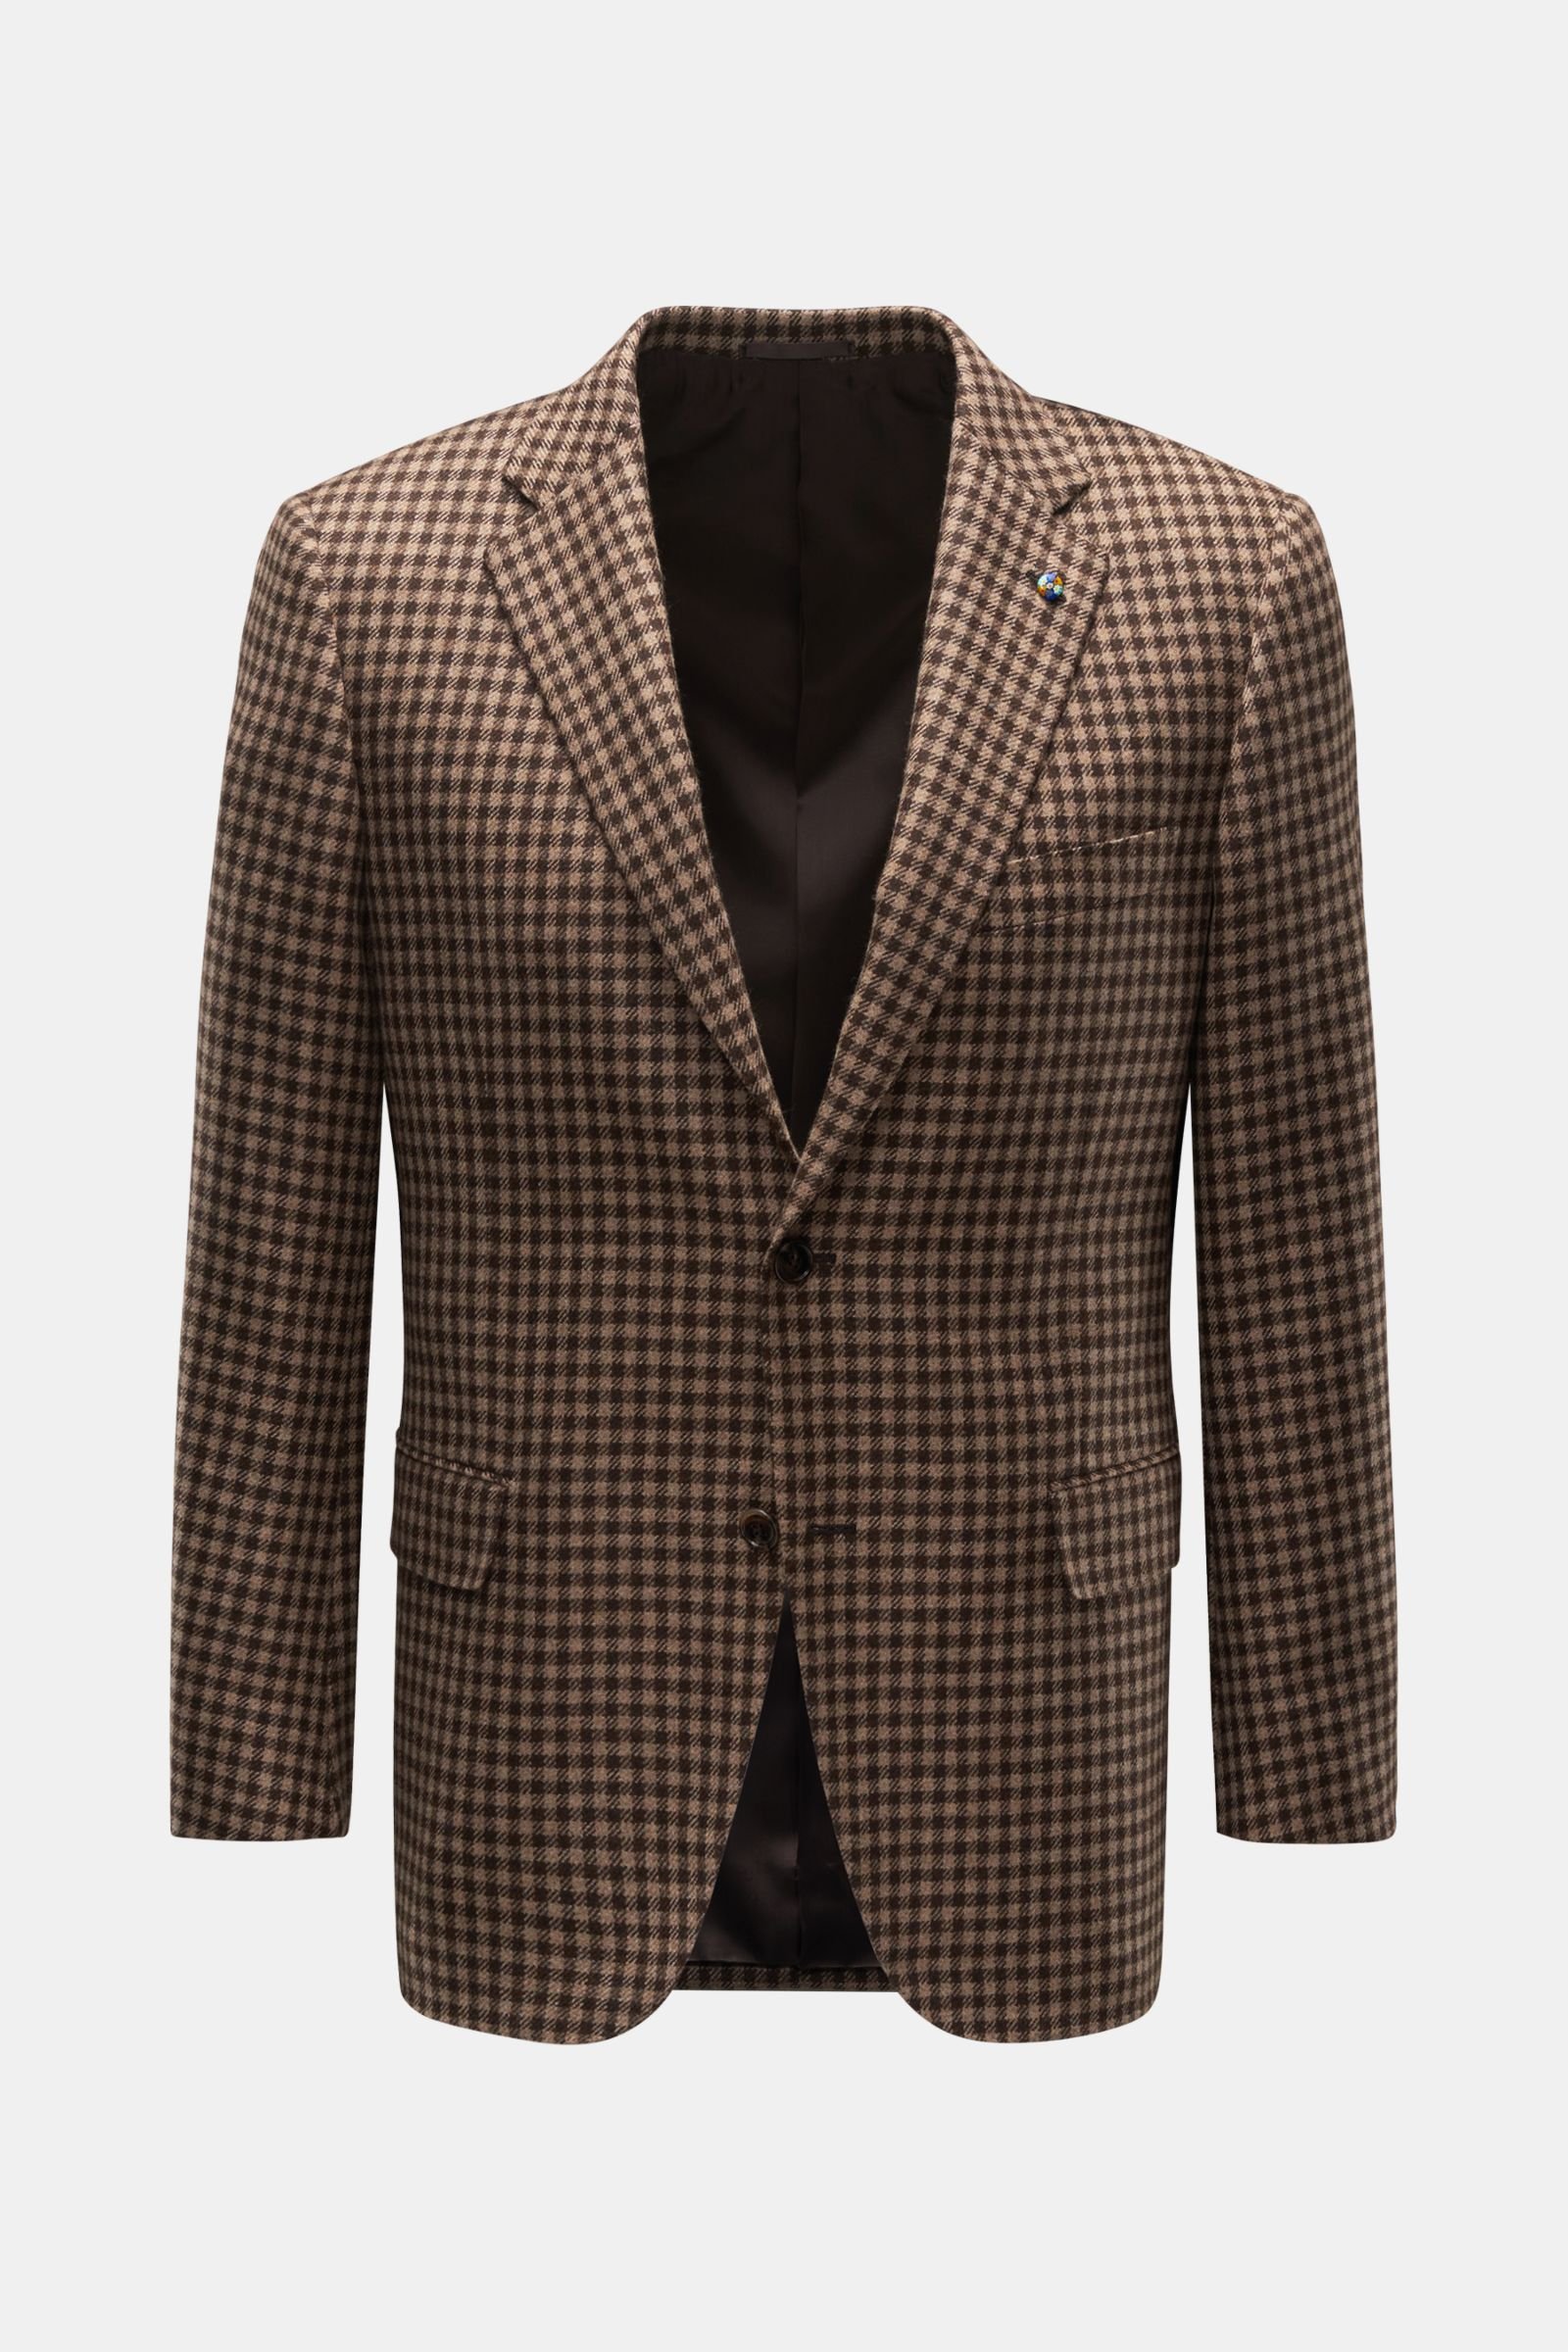 Cashmere jacket light brown/dark brown checked 